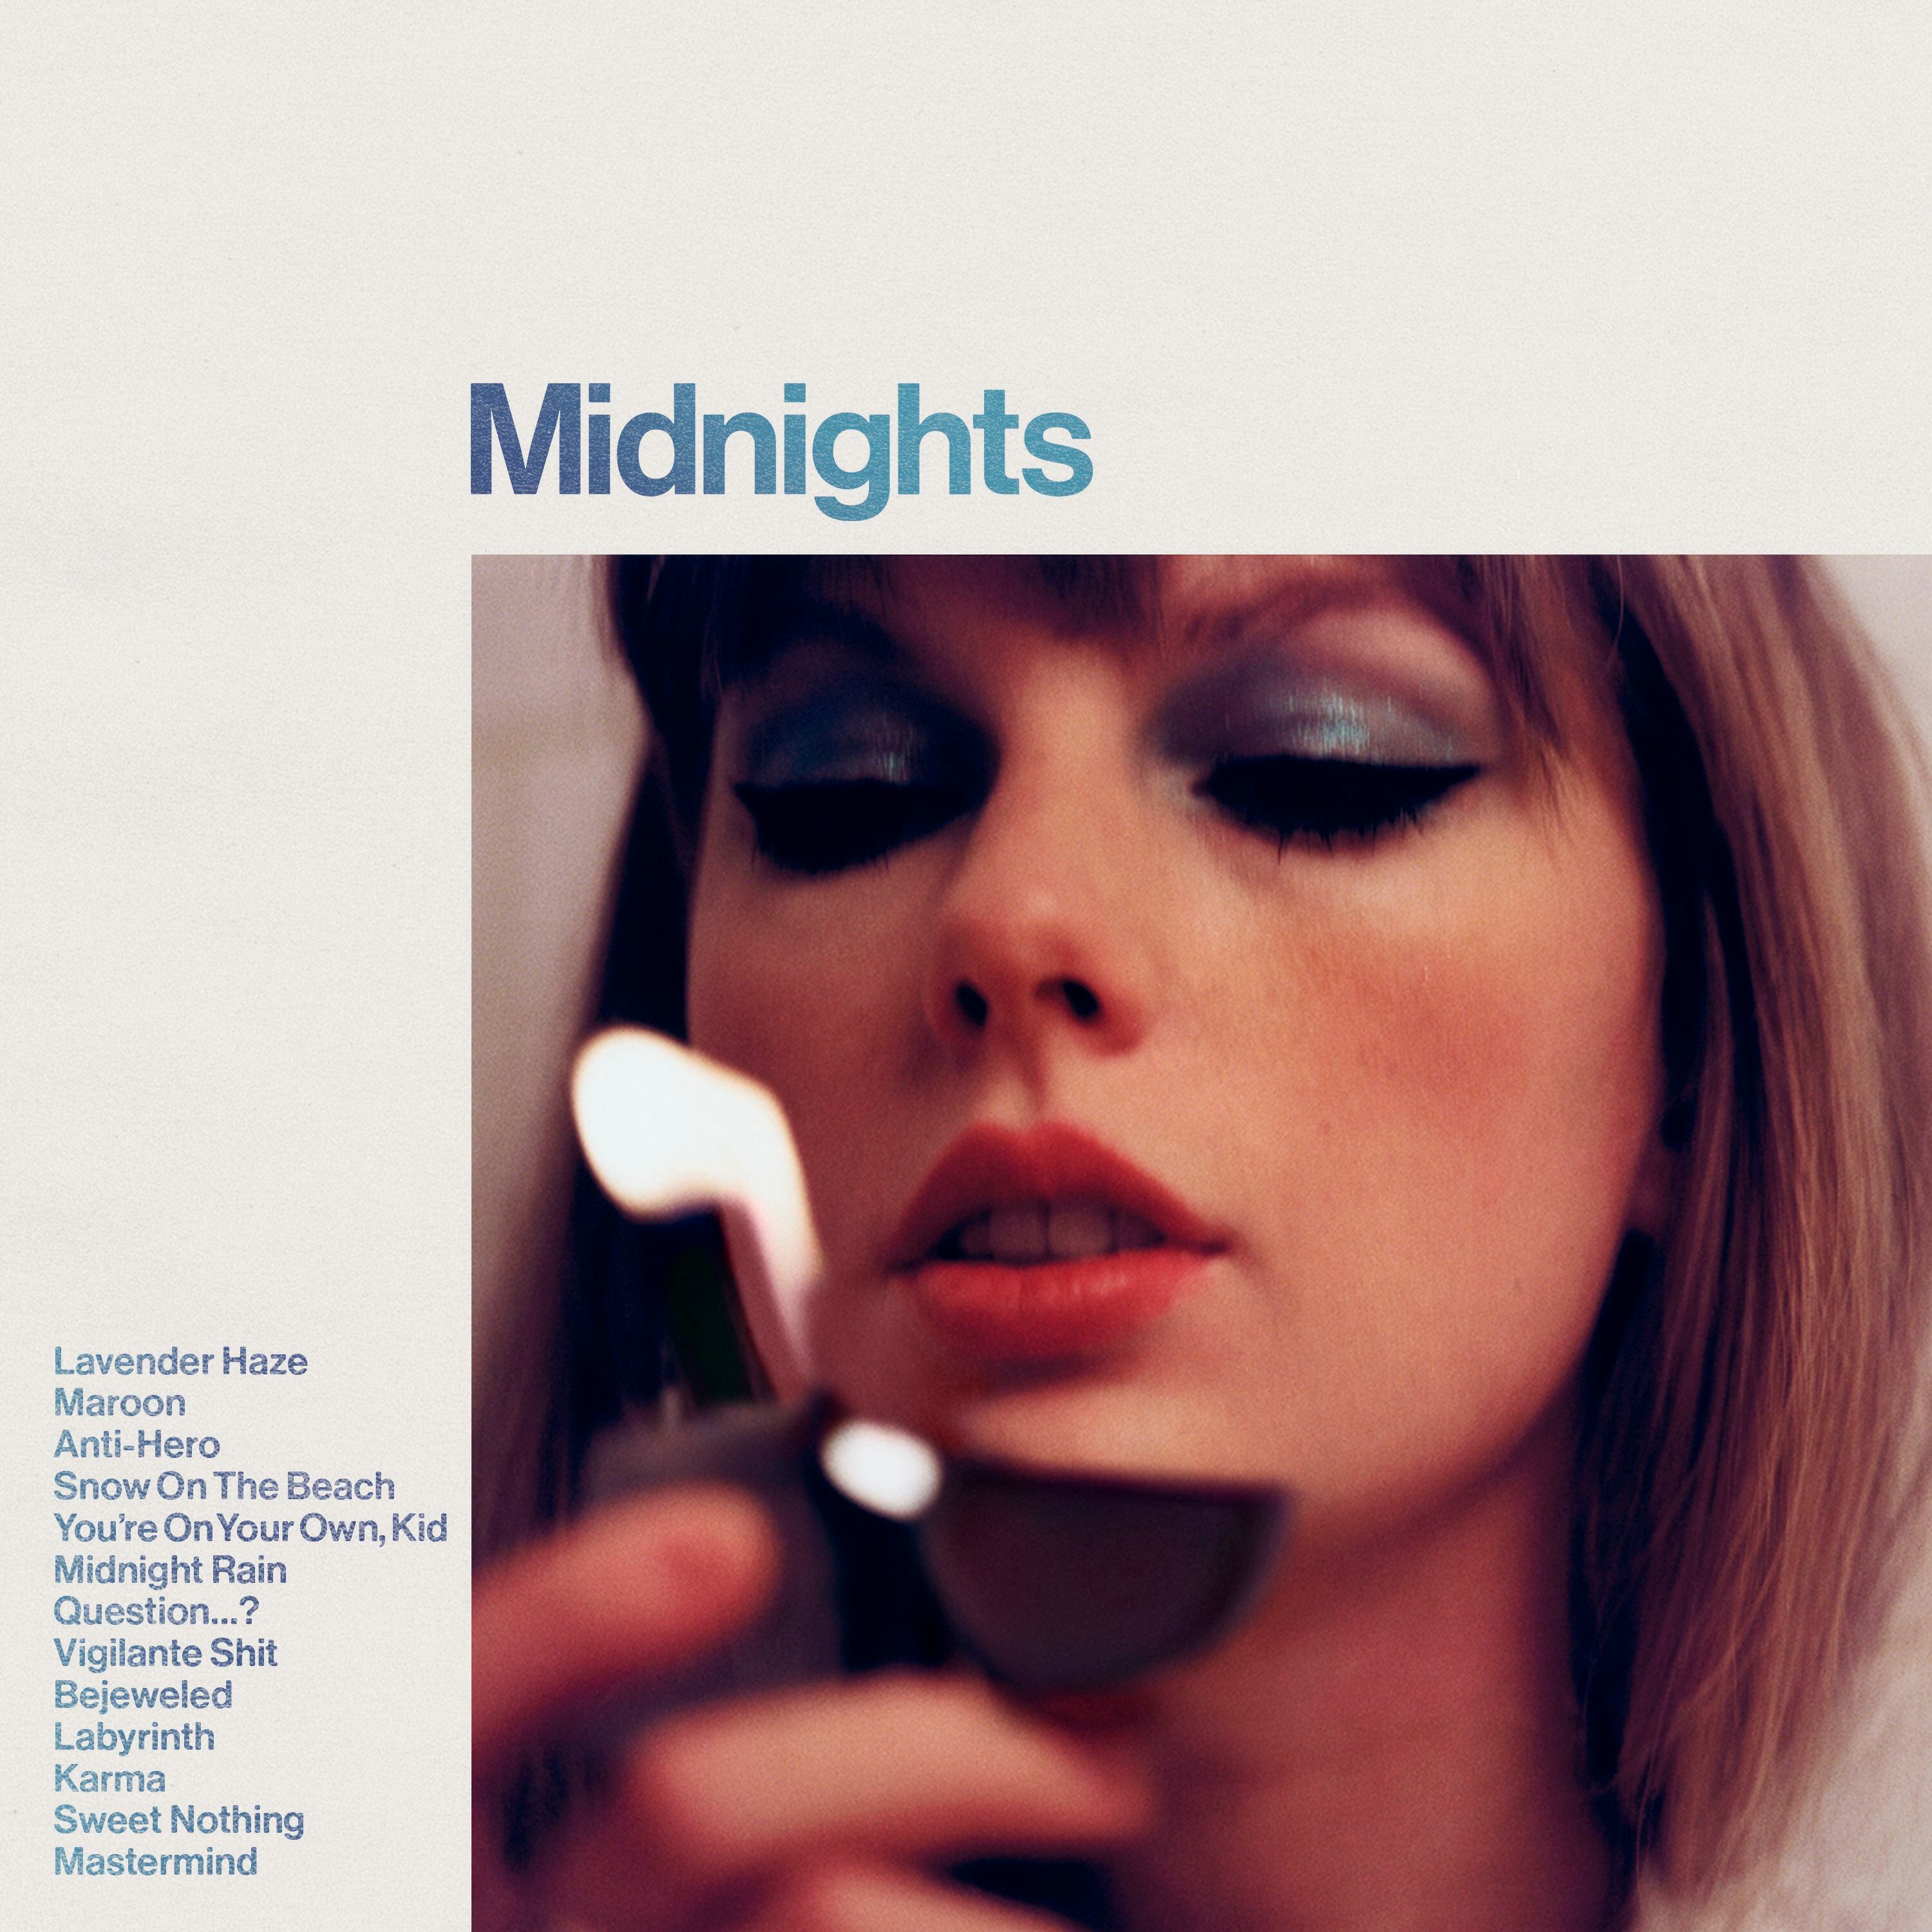 Portada del disco 'Midnights', de Taylor Swift. (Republic Records / AP)